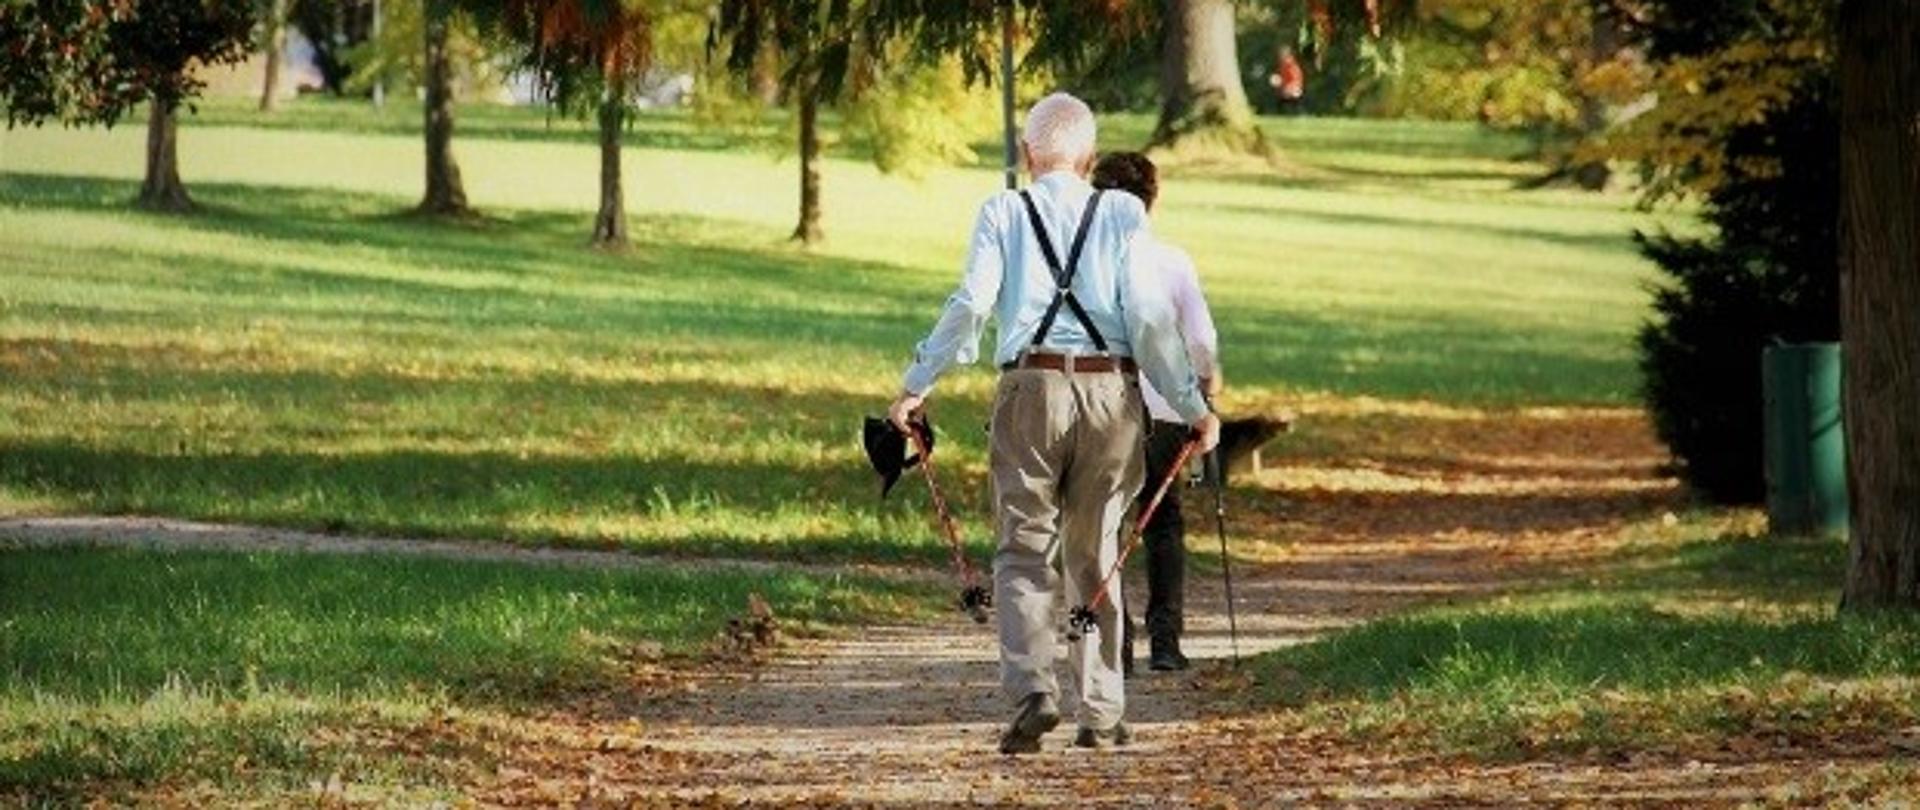 seniorzy na spacerze w parku odwróceni plecami 